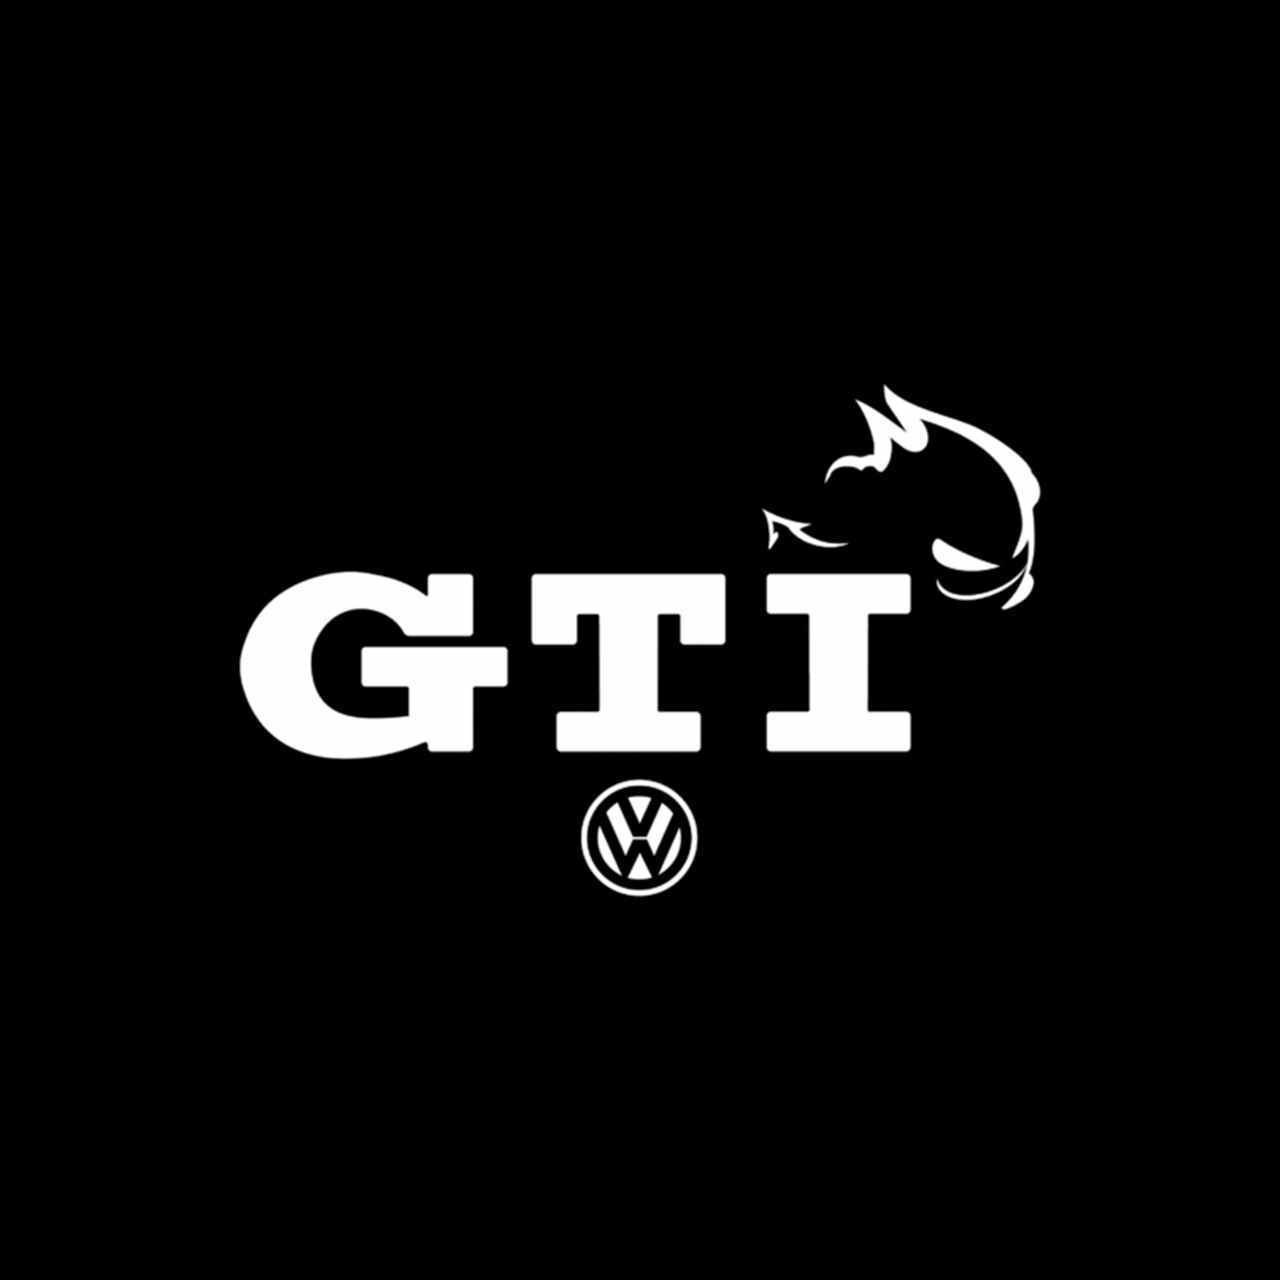 Volkswagen Gti Logo 2 Vinyl Decal Sticker